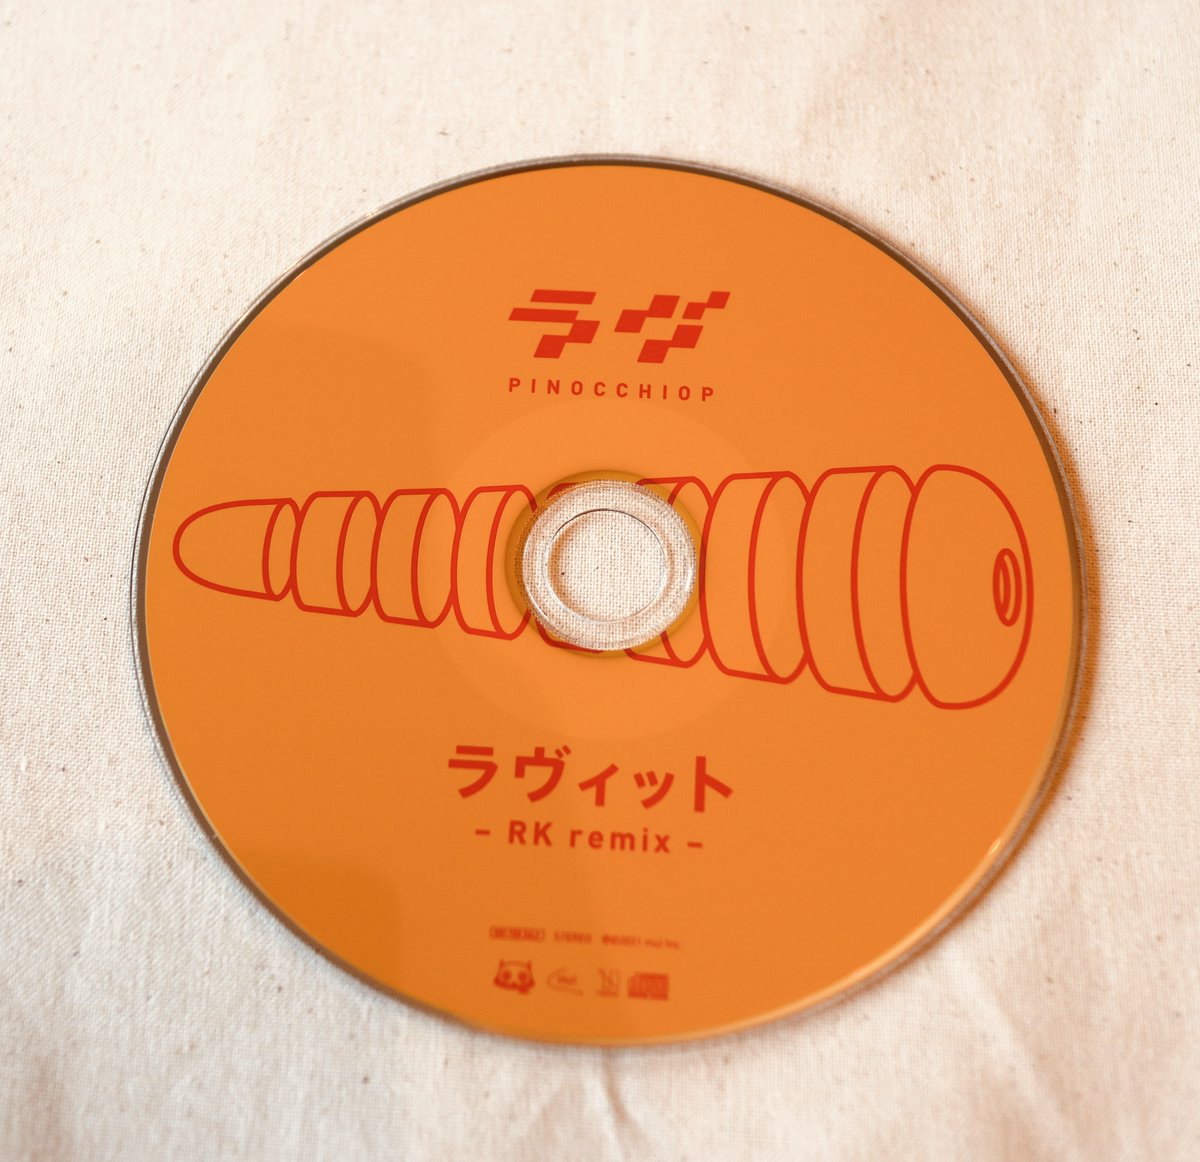 「【『ラヴ』特典紹介①】
とらのあな限定特典CD『ラヴィット -RK remix 」|ピノキオピーのイラスト